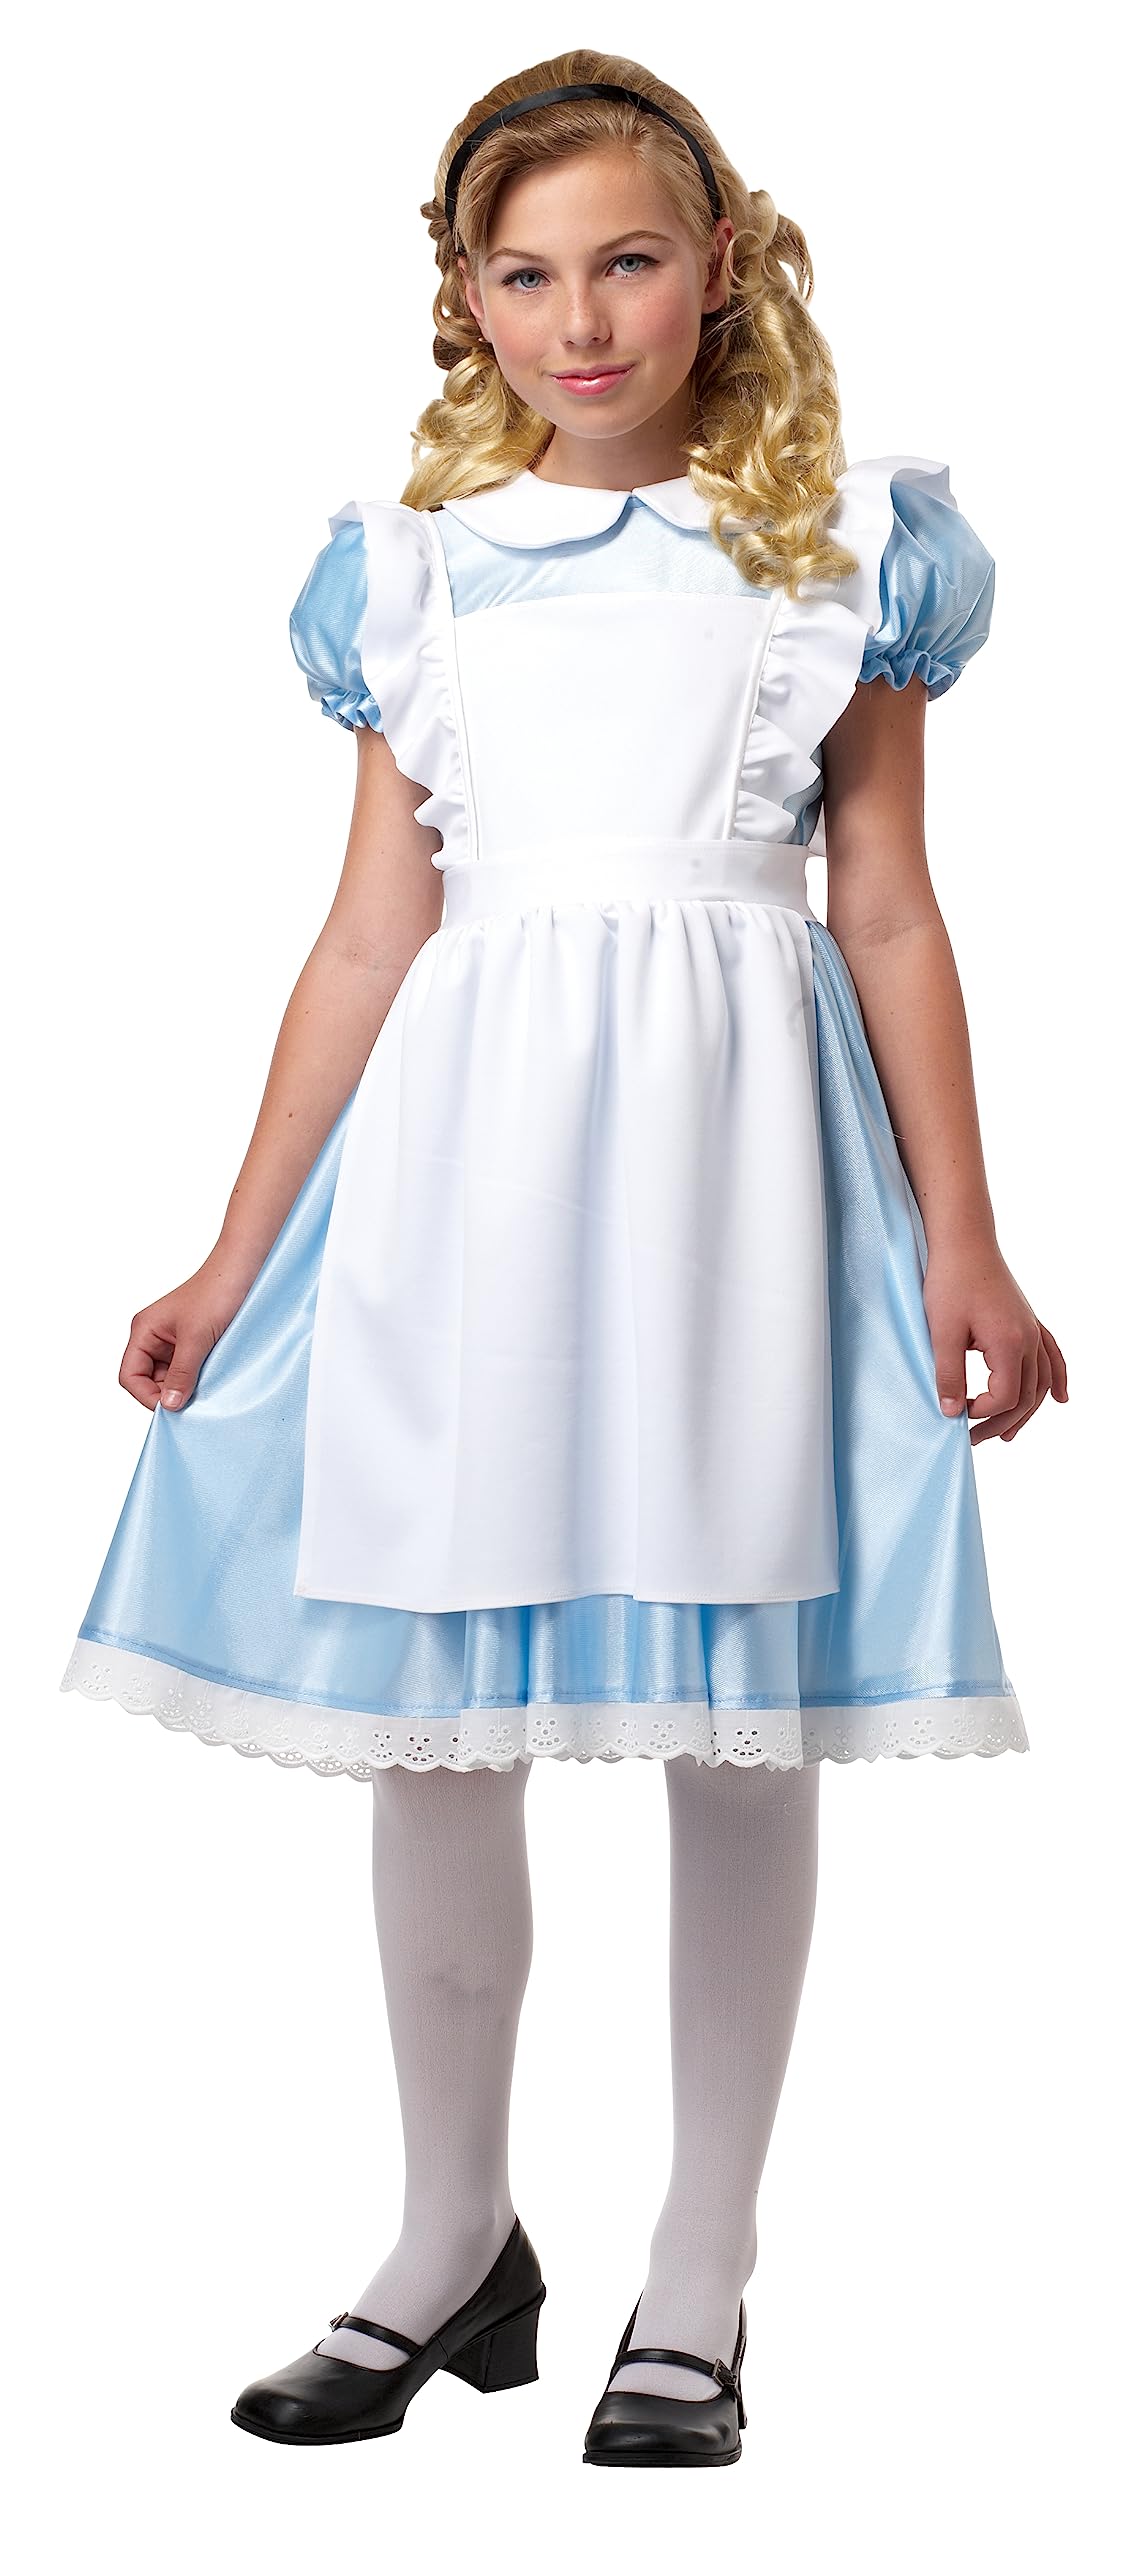 California Costumes Alice Girl's Costume Small, White/Blue